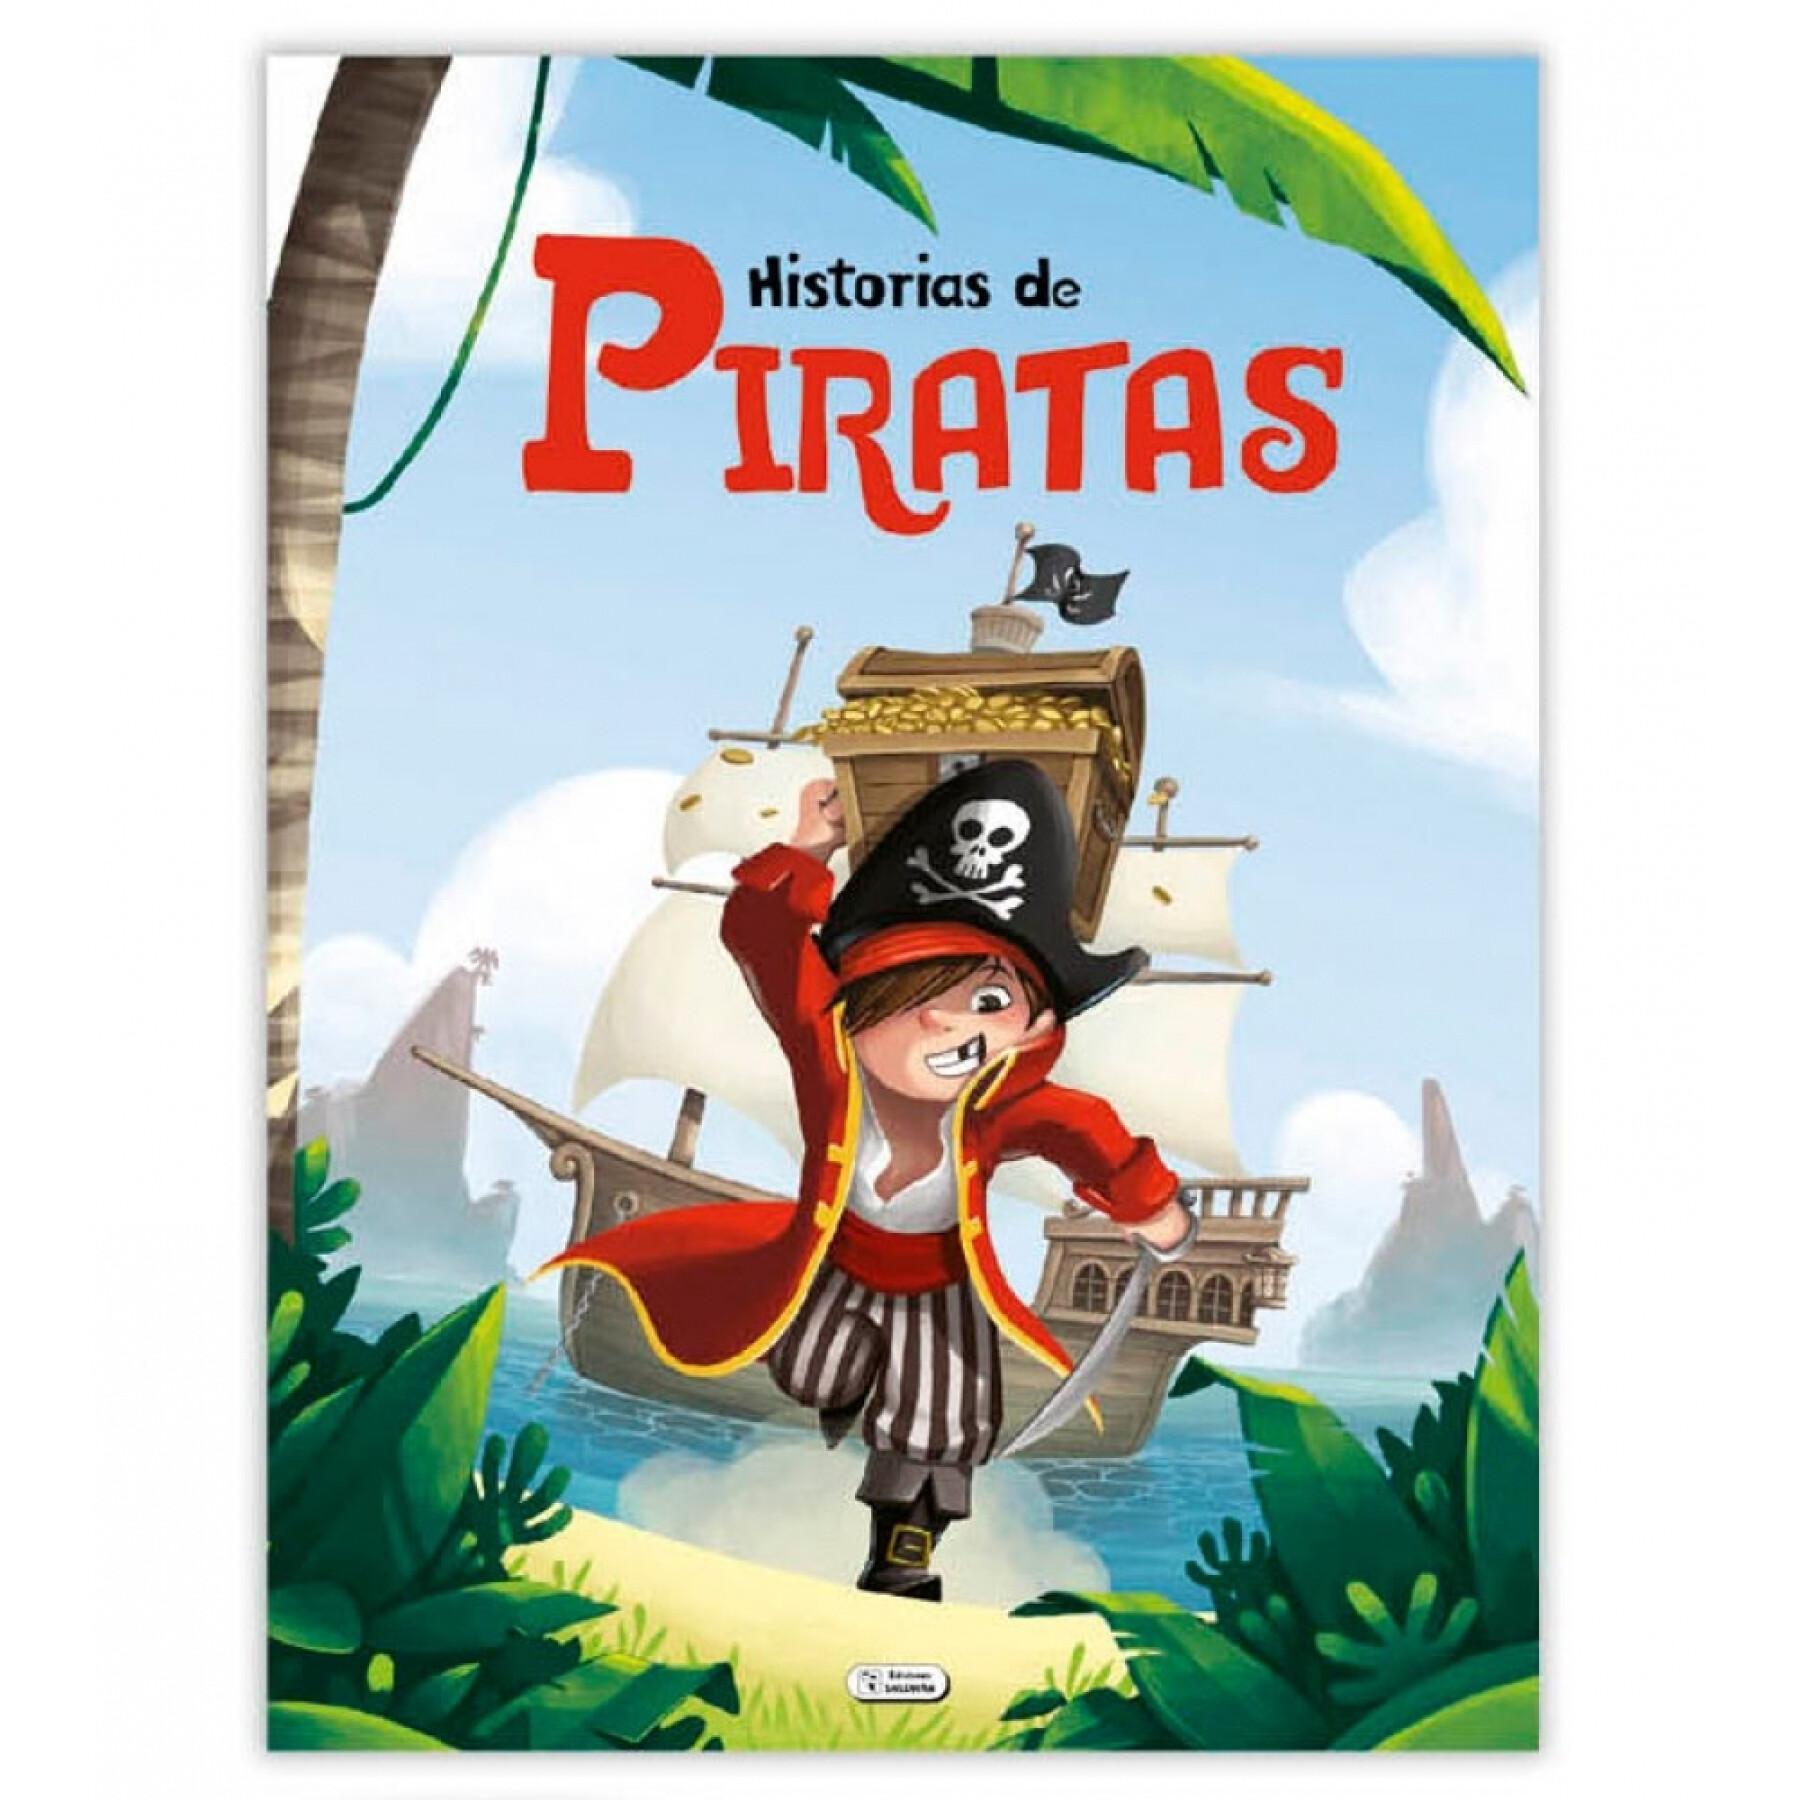 Cuentos de 120 páginas de pirates Ediciones Saldaña